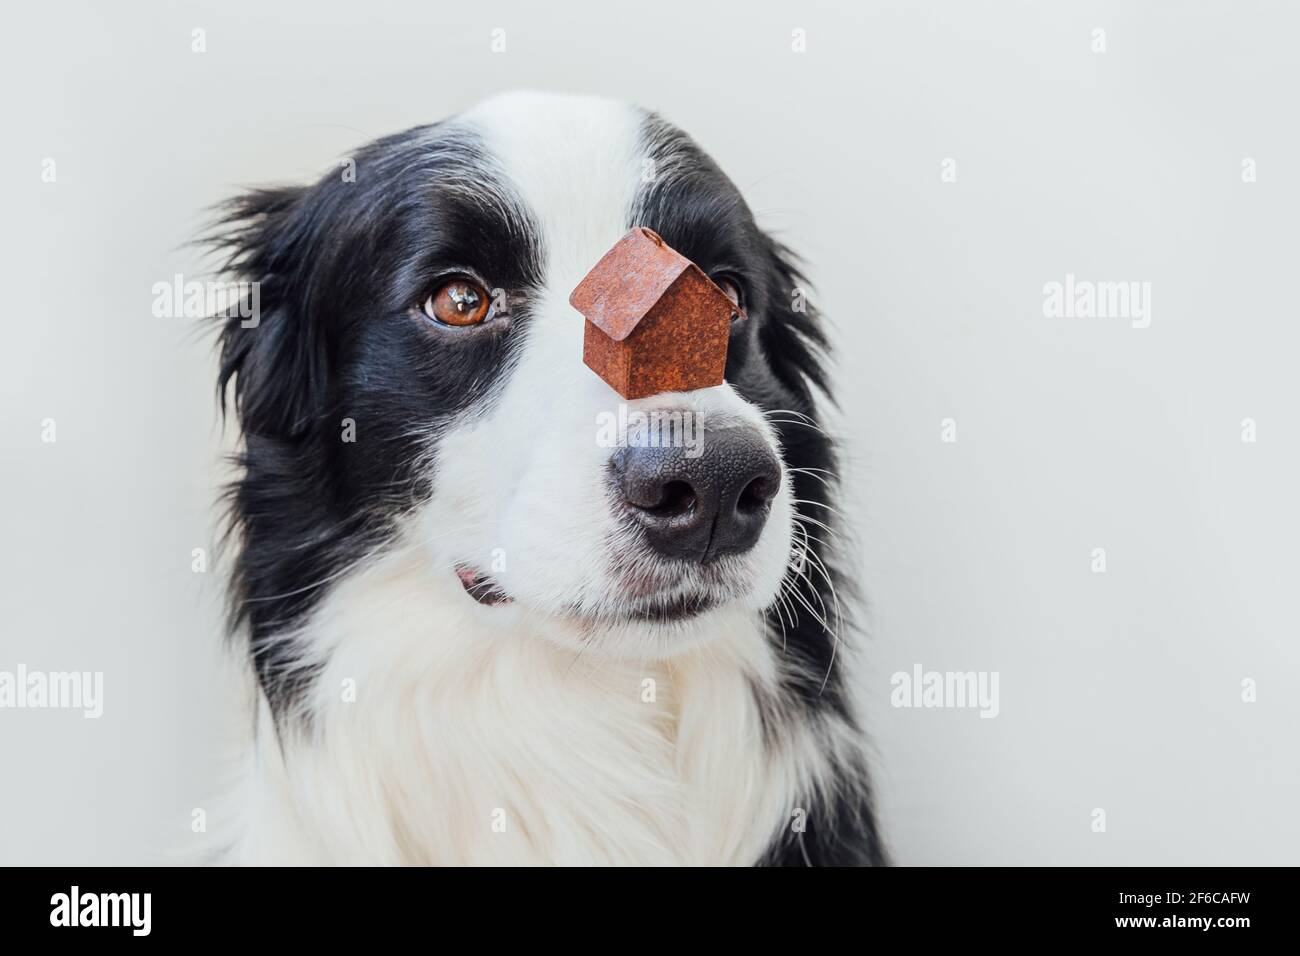 Lustige Porträt von niedlichen Welpen Hund Grenze Collie hält Miniatur-Spielzeug-Modell Haus auf der Nase, isoliert auf weißem Hintergrund. Immobilien Hypothek Immobilien Stockfoto